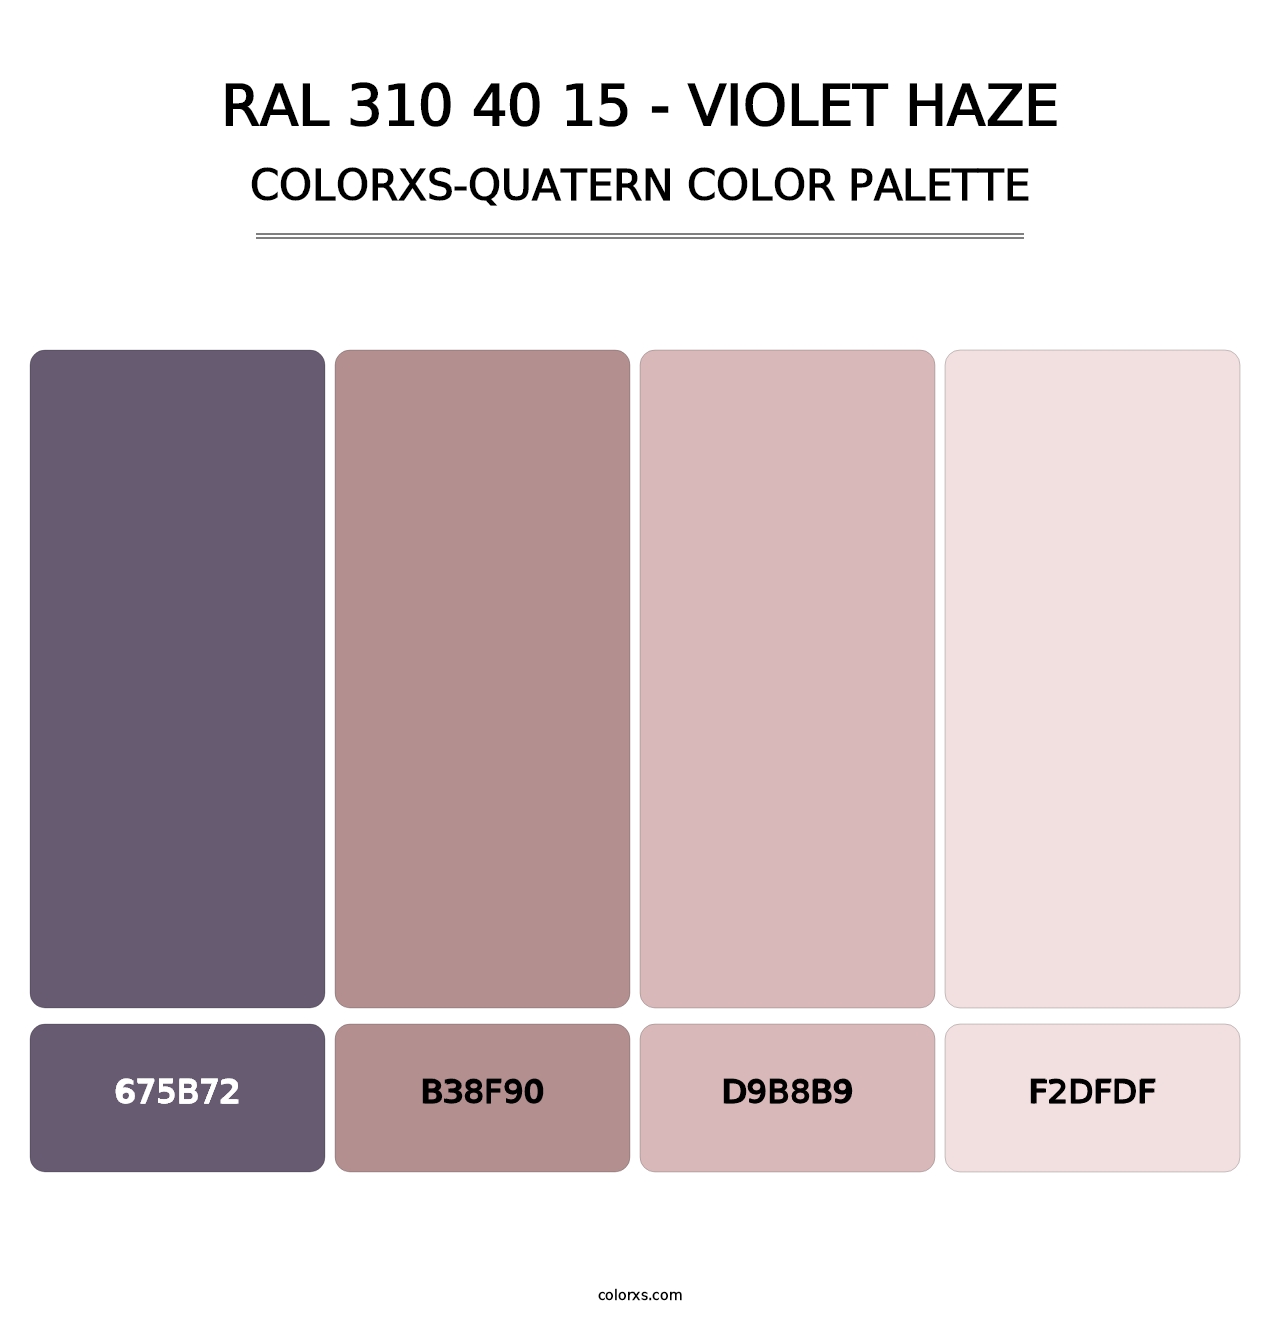 RAL 310 40 15 - Violet Haze - Colorxs Quatern Palette